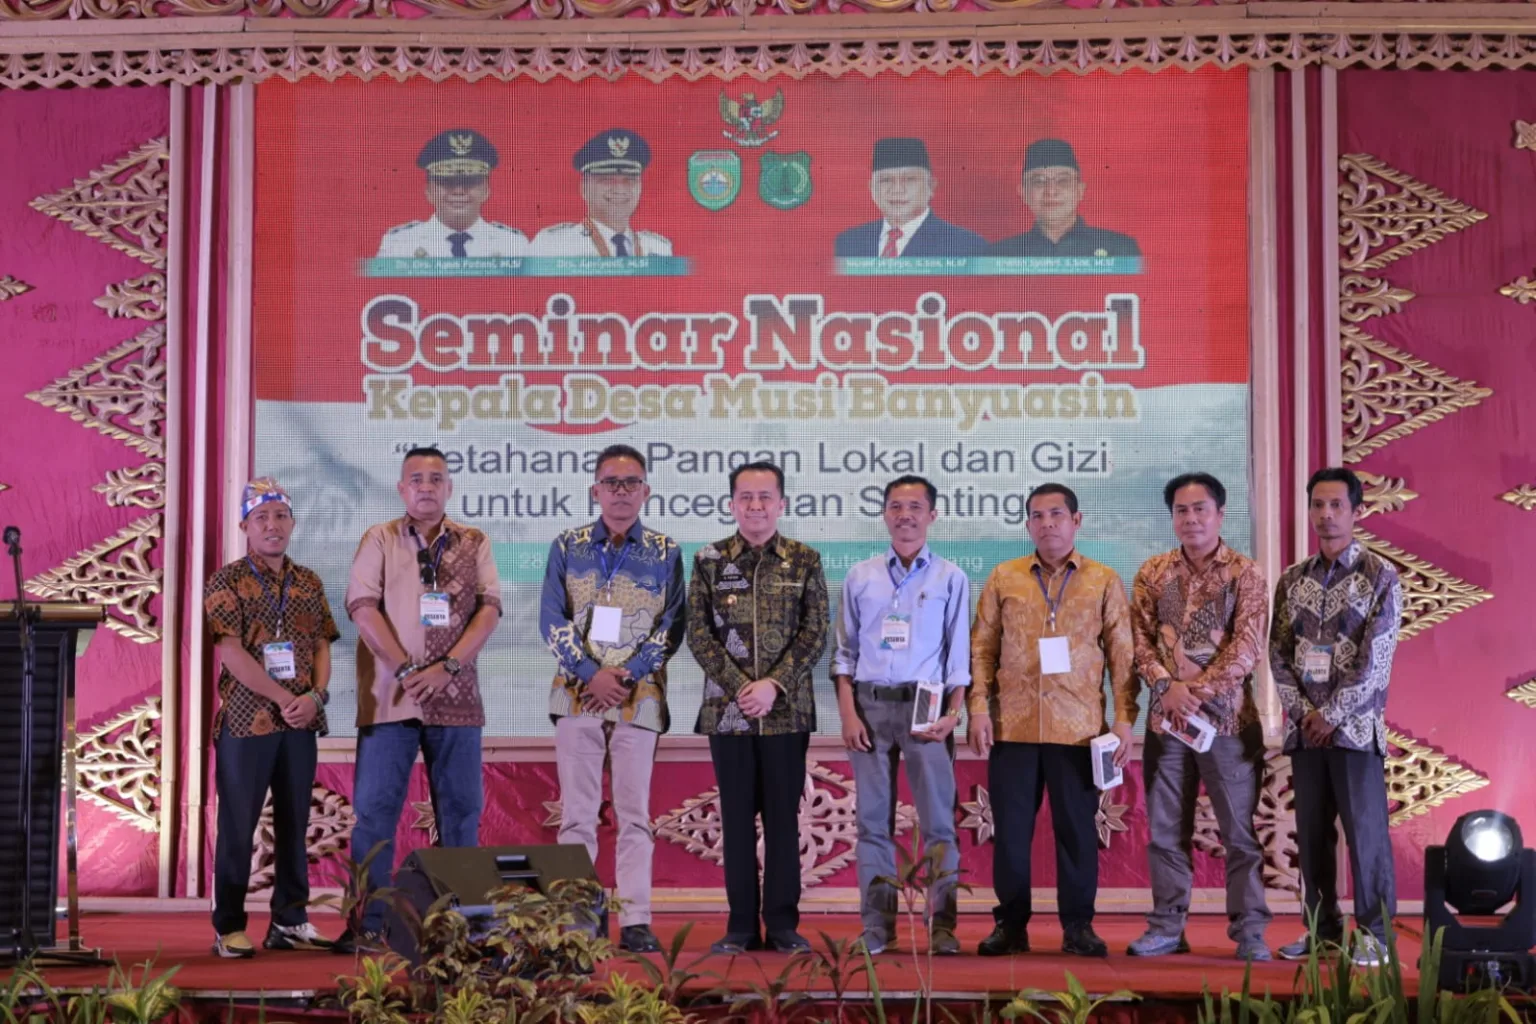 Seminar Nasional Bersama Kepala Desa se Kabupaten Musi Banyuasin